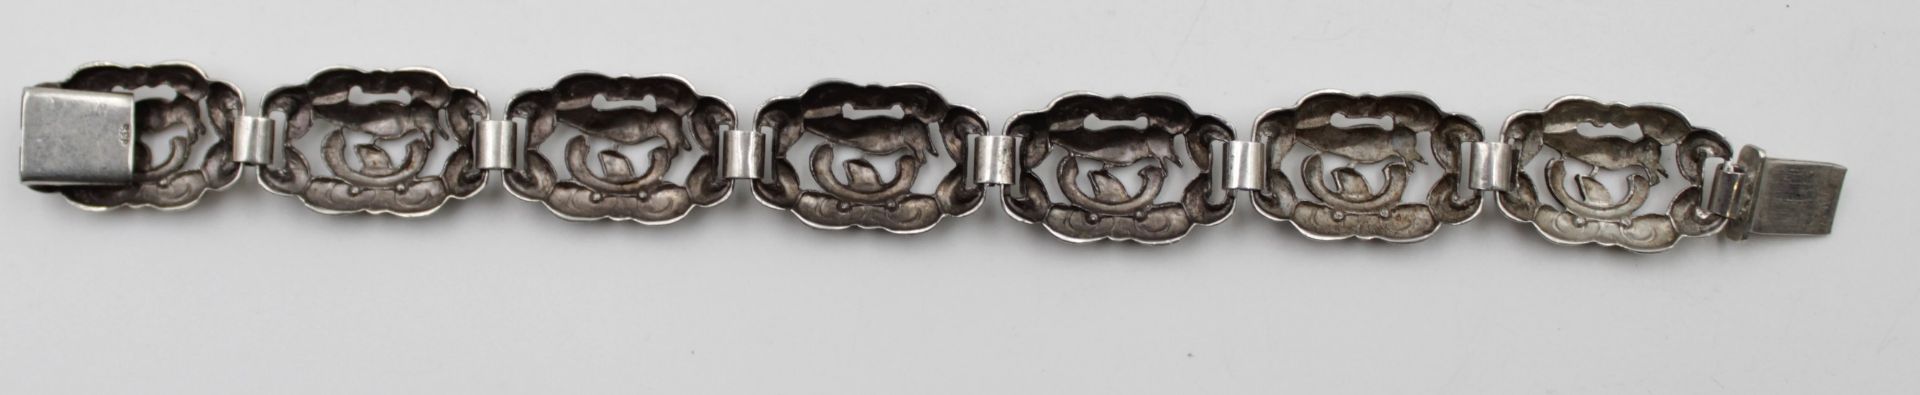 835er Silber-Armband, Durchbrucharbeit, 20/30er Jahre, 24,4gr., L-19,5cm. - Bild 3 aus 4